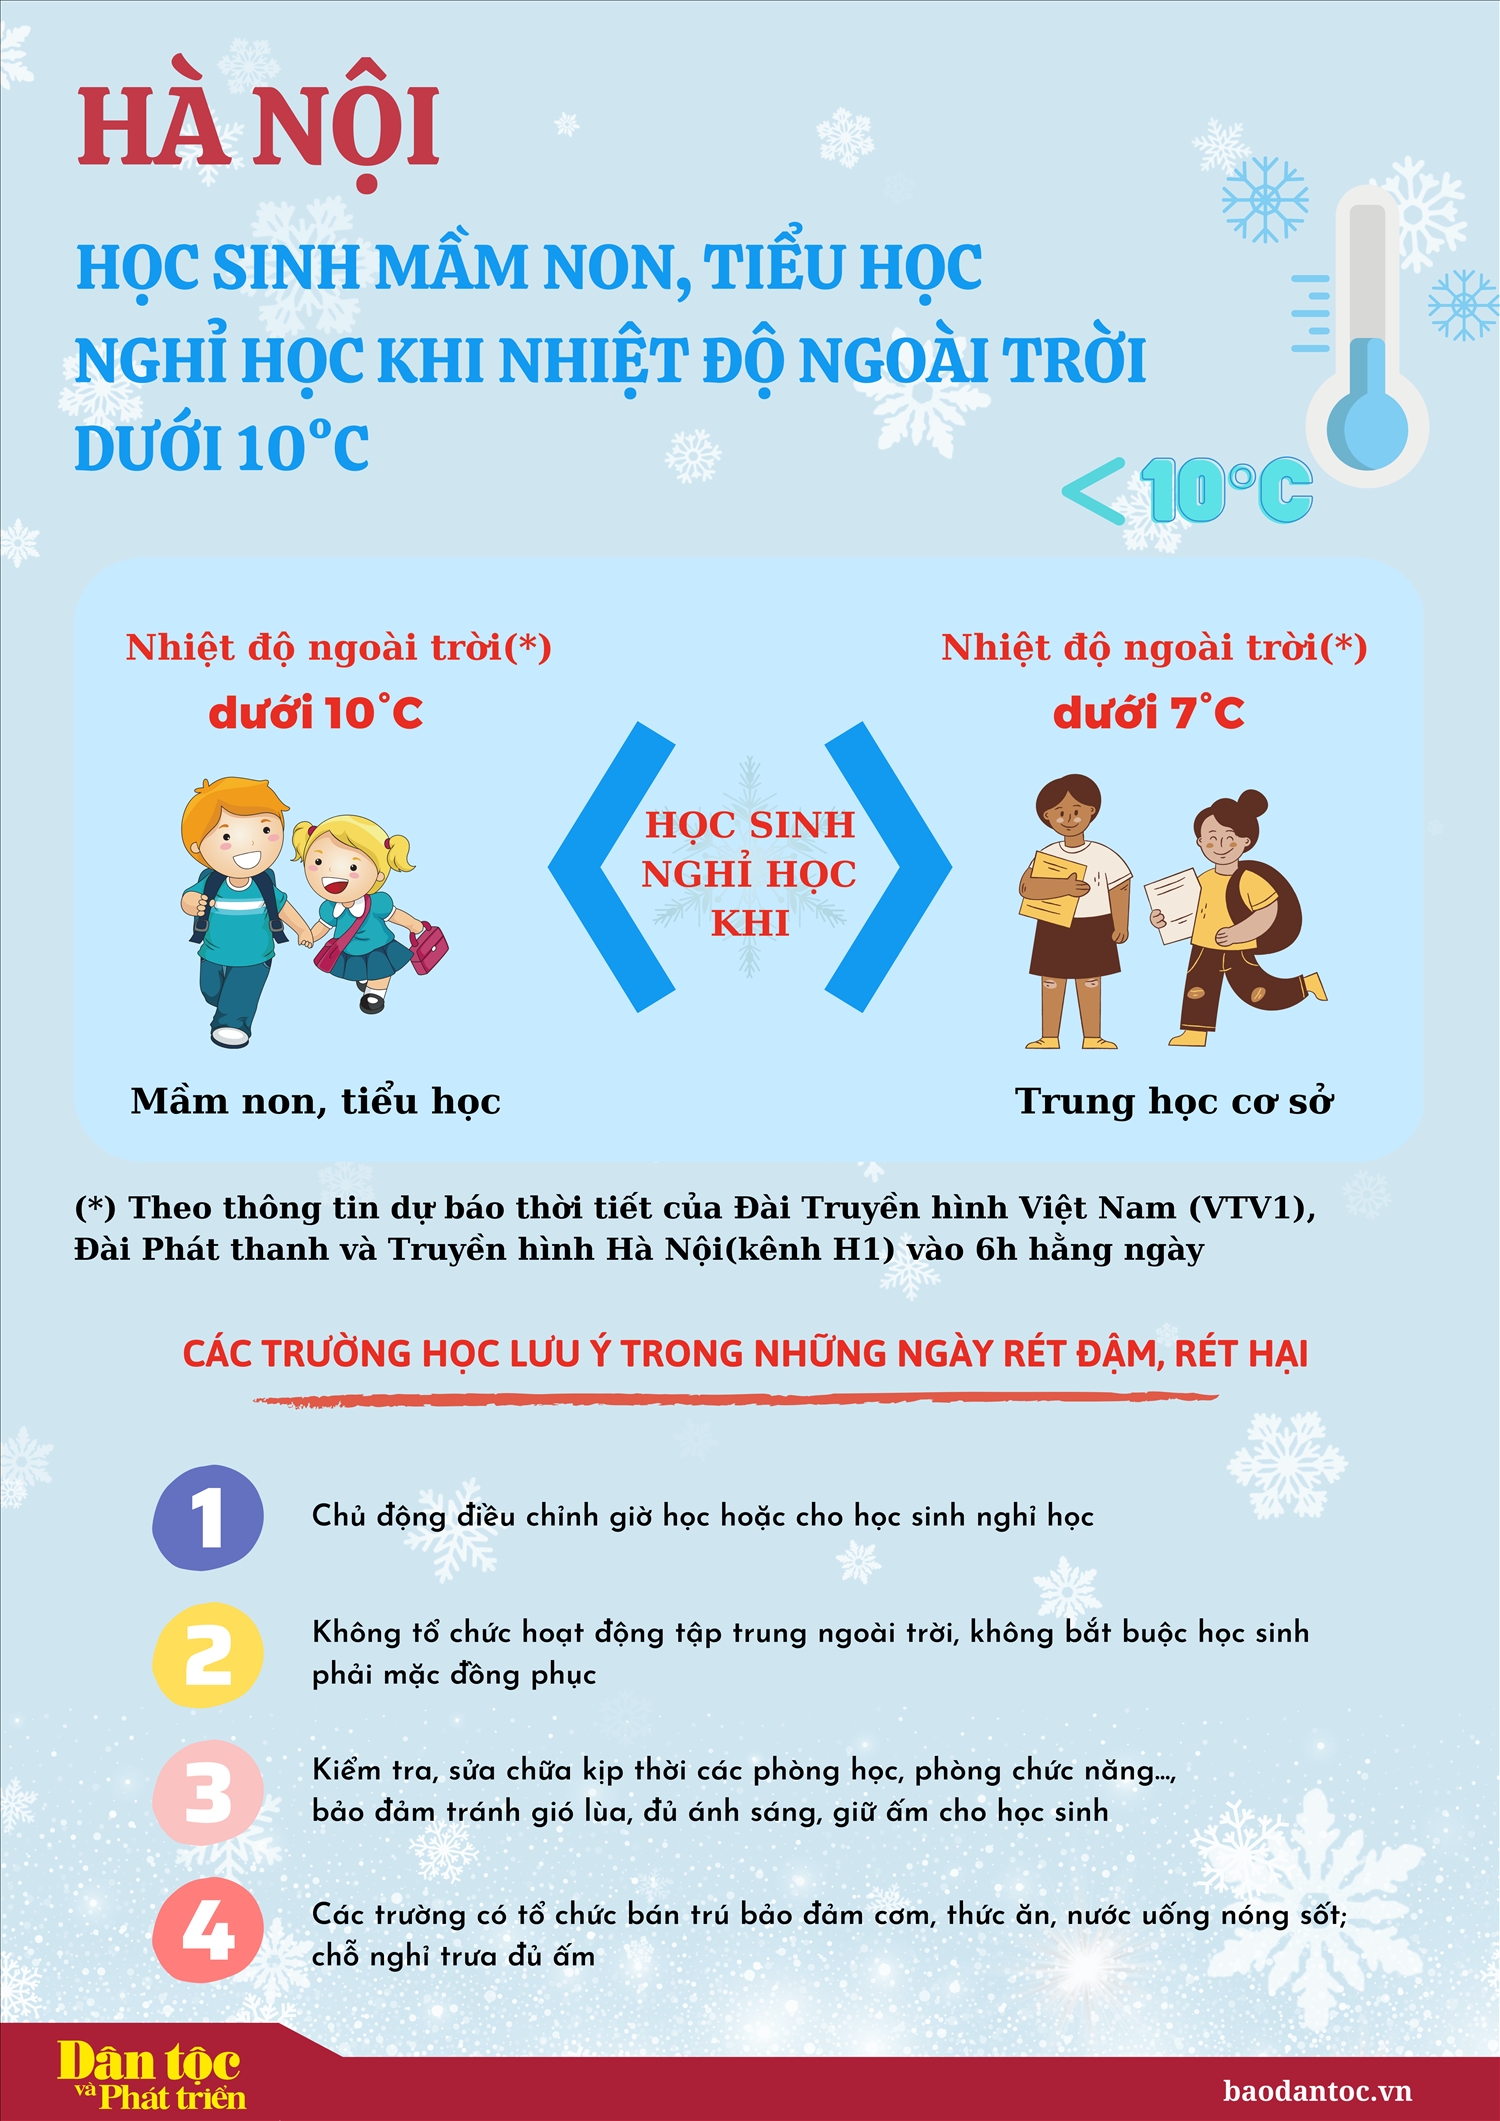 Học sinh mầm non, tiểu học Hà Nội nghỉ học khi nhiệt độ ngoài trời dưới 10 độ C